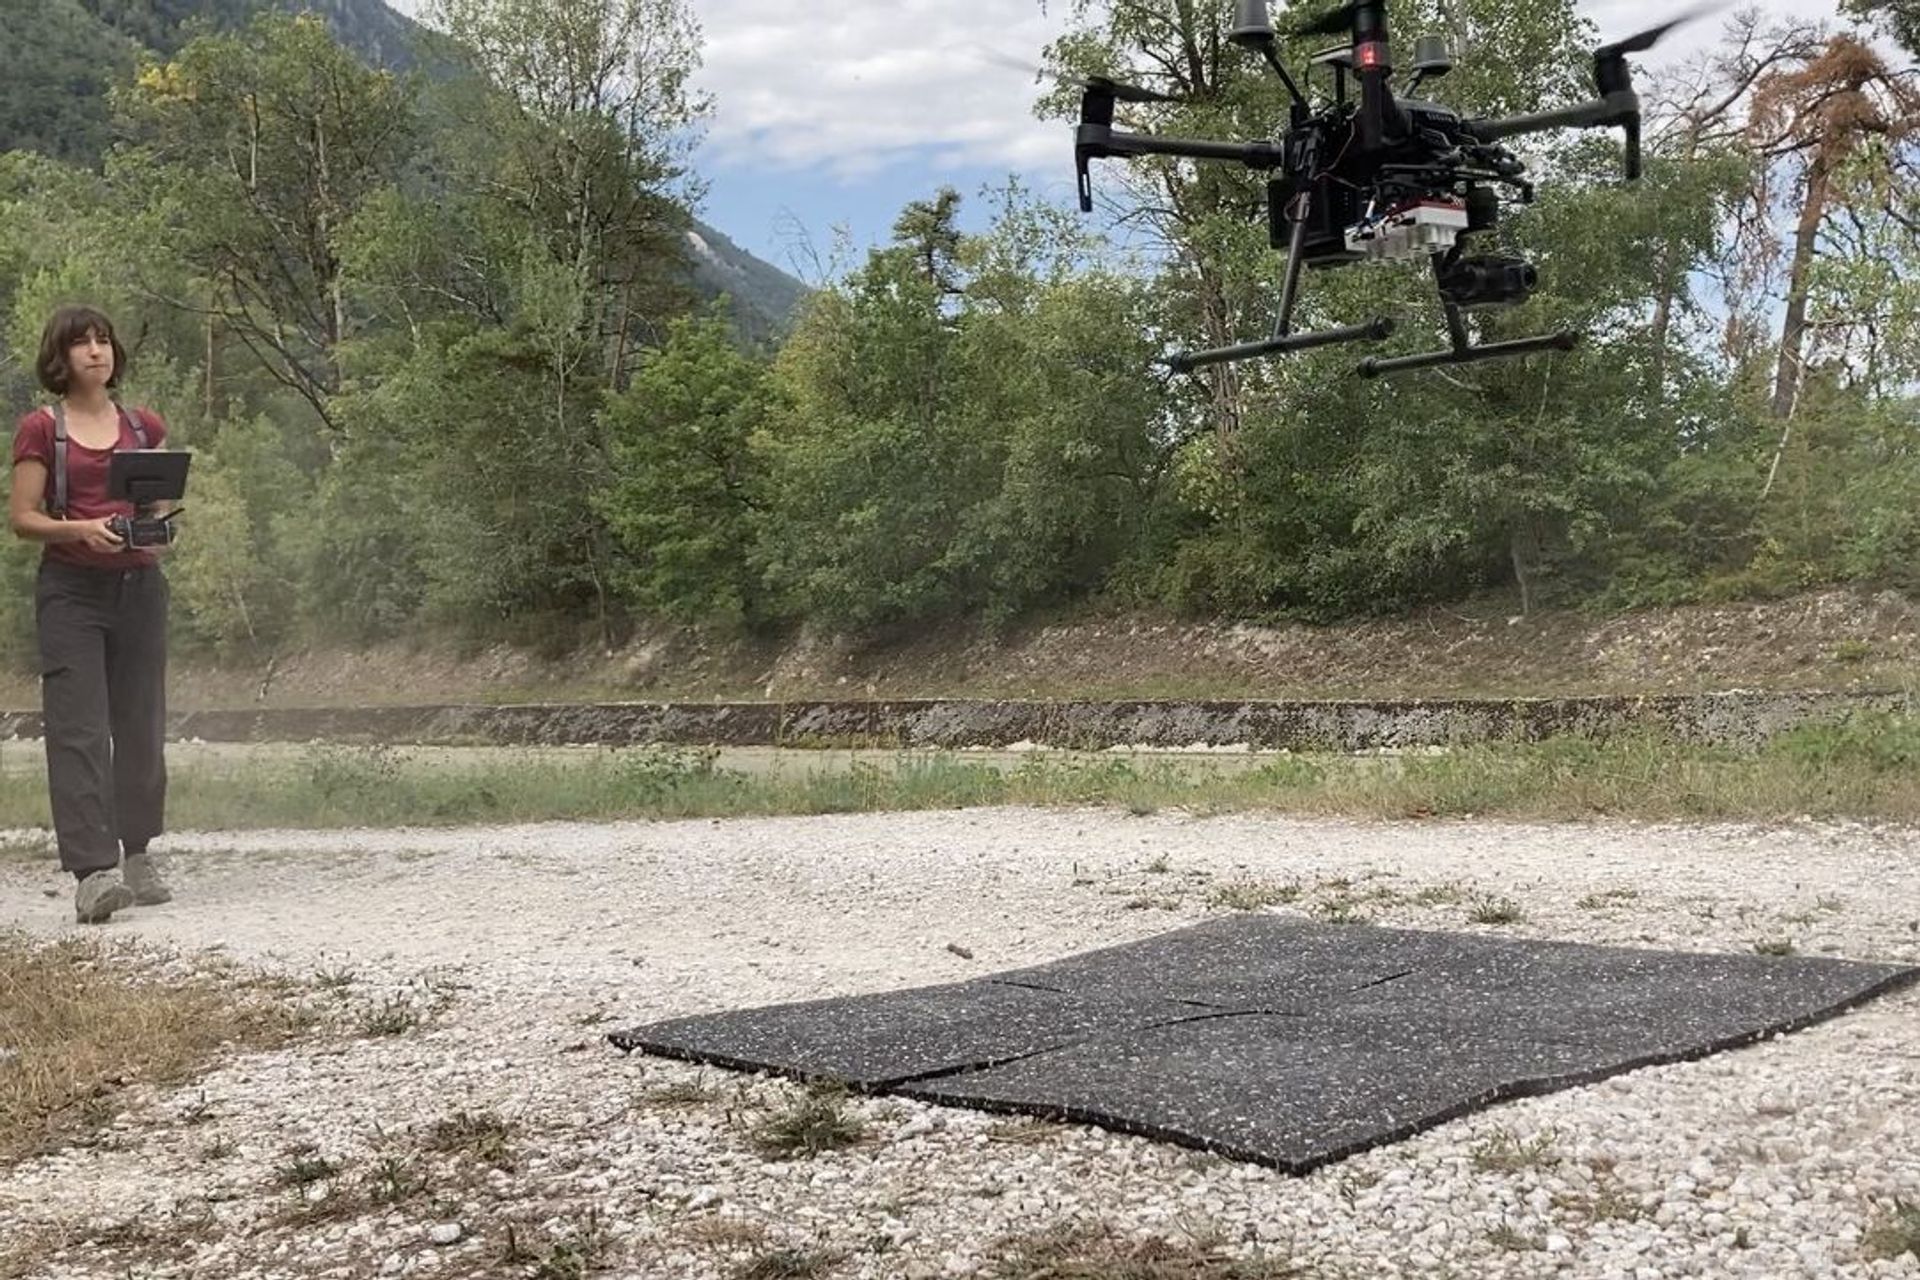 Istraživačica Petra D'Odorico koja leti dronom na lokaciji za istraživanje šuma Pfynwald u Valaisu u ljeto 2020. (Fotografija Frederik BaumgartenWSL)